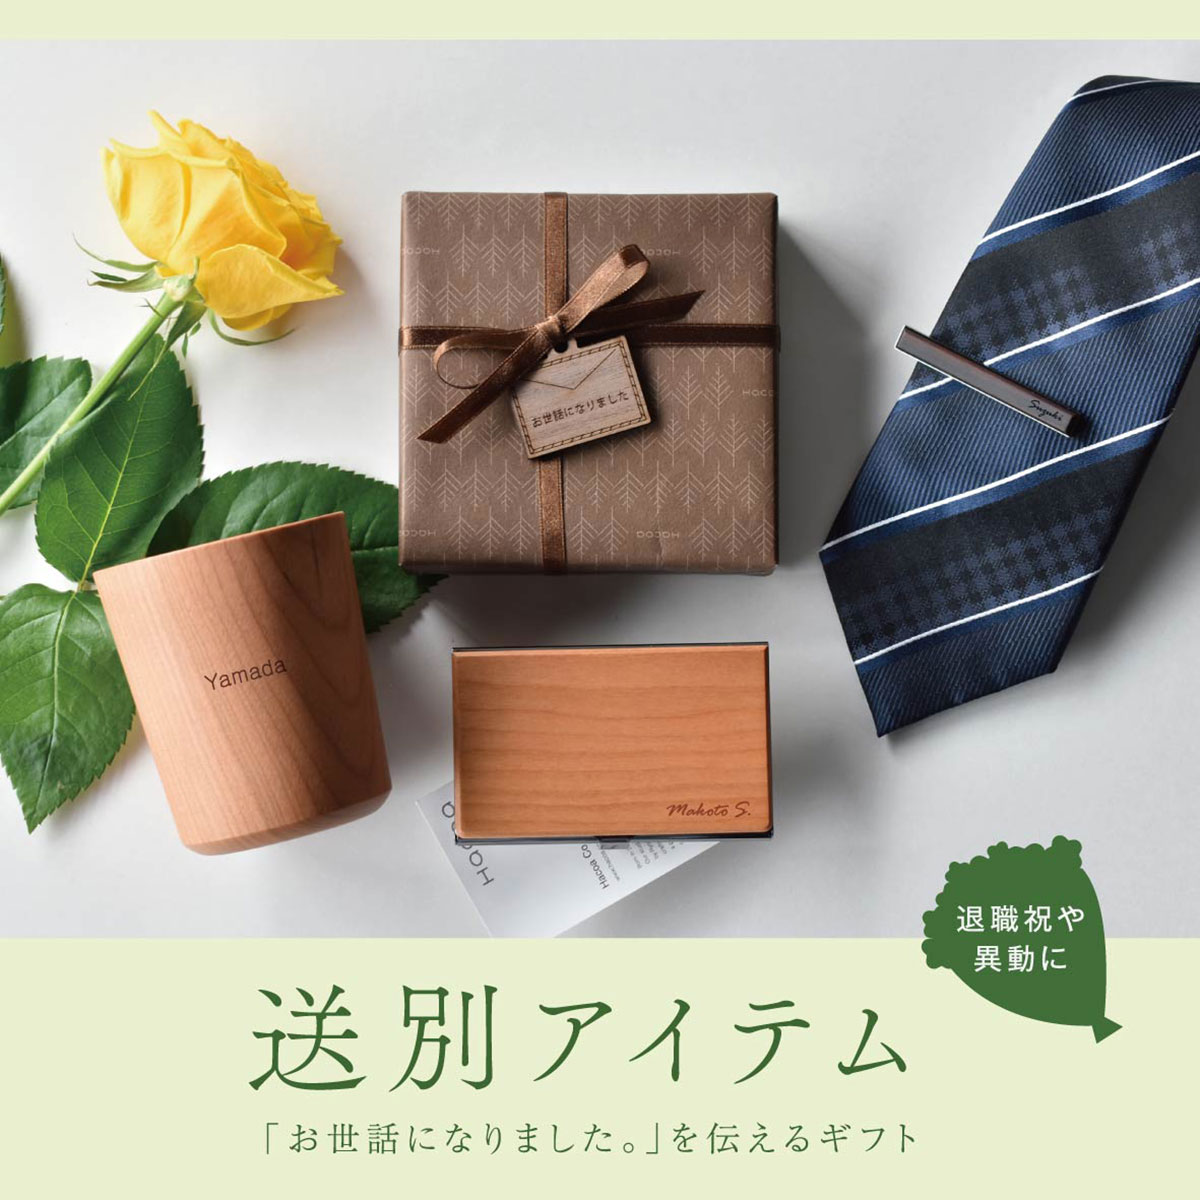 【卒業・送別祝い】春に贈る「木」のプレゼント